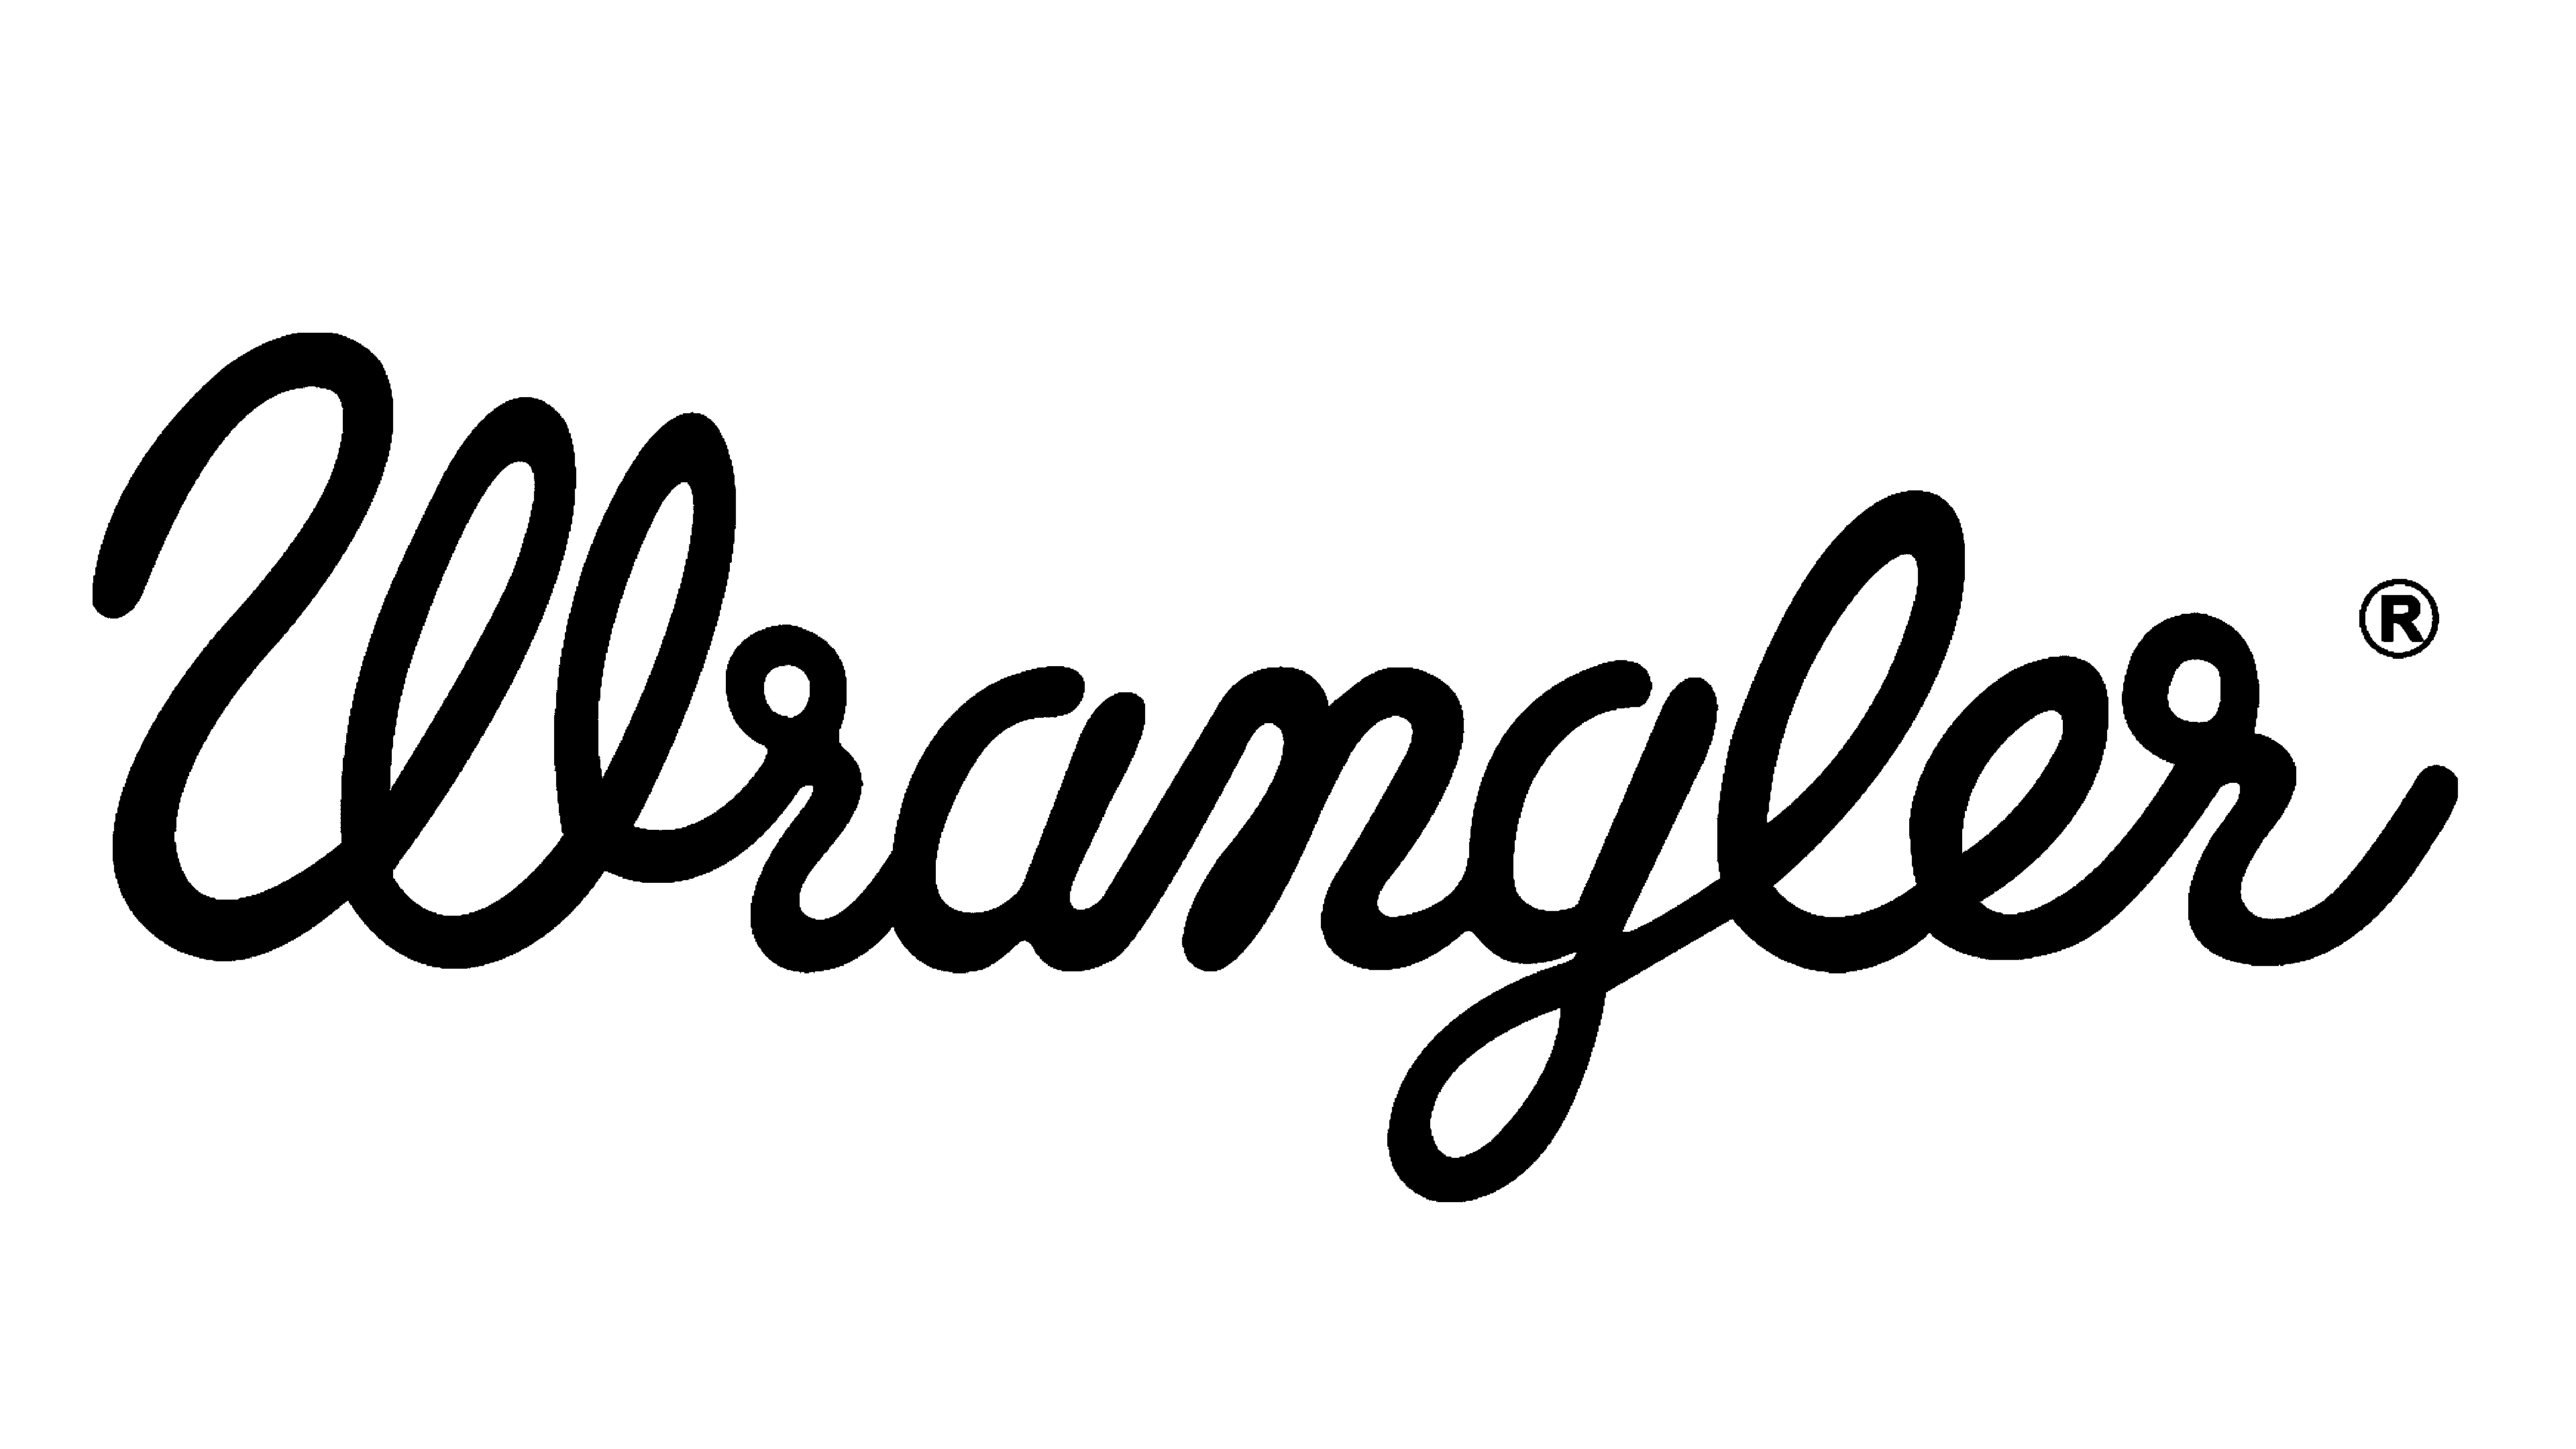 Vergemakkelijken park Parasiet Wrangler Logo and symbol, meaning, history, PNG, brand